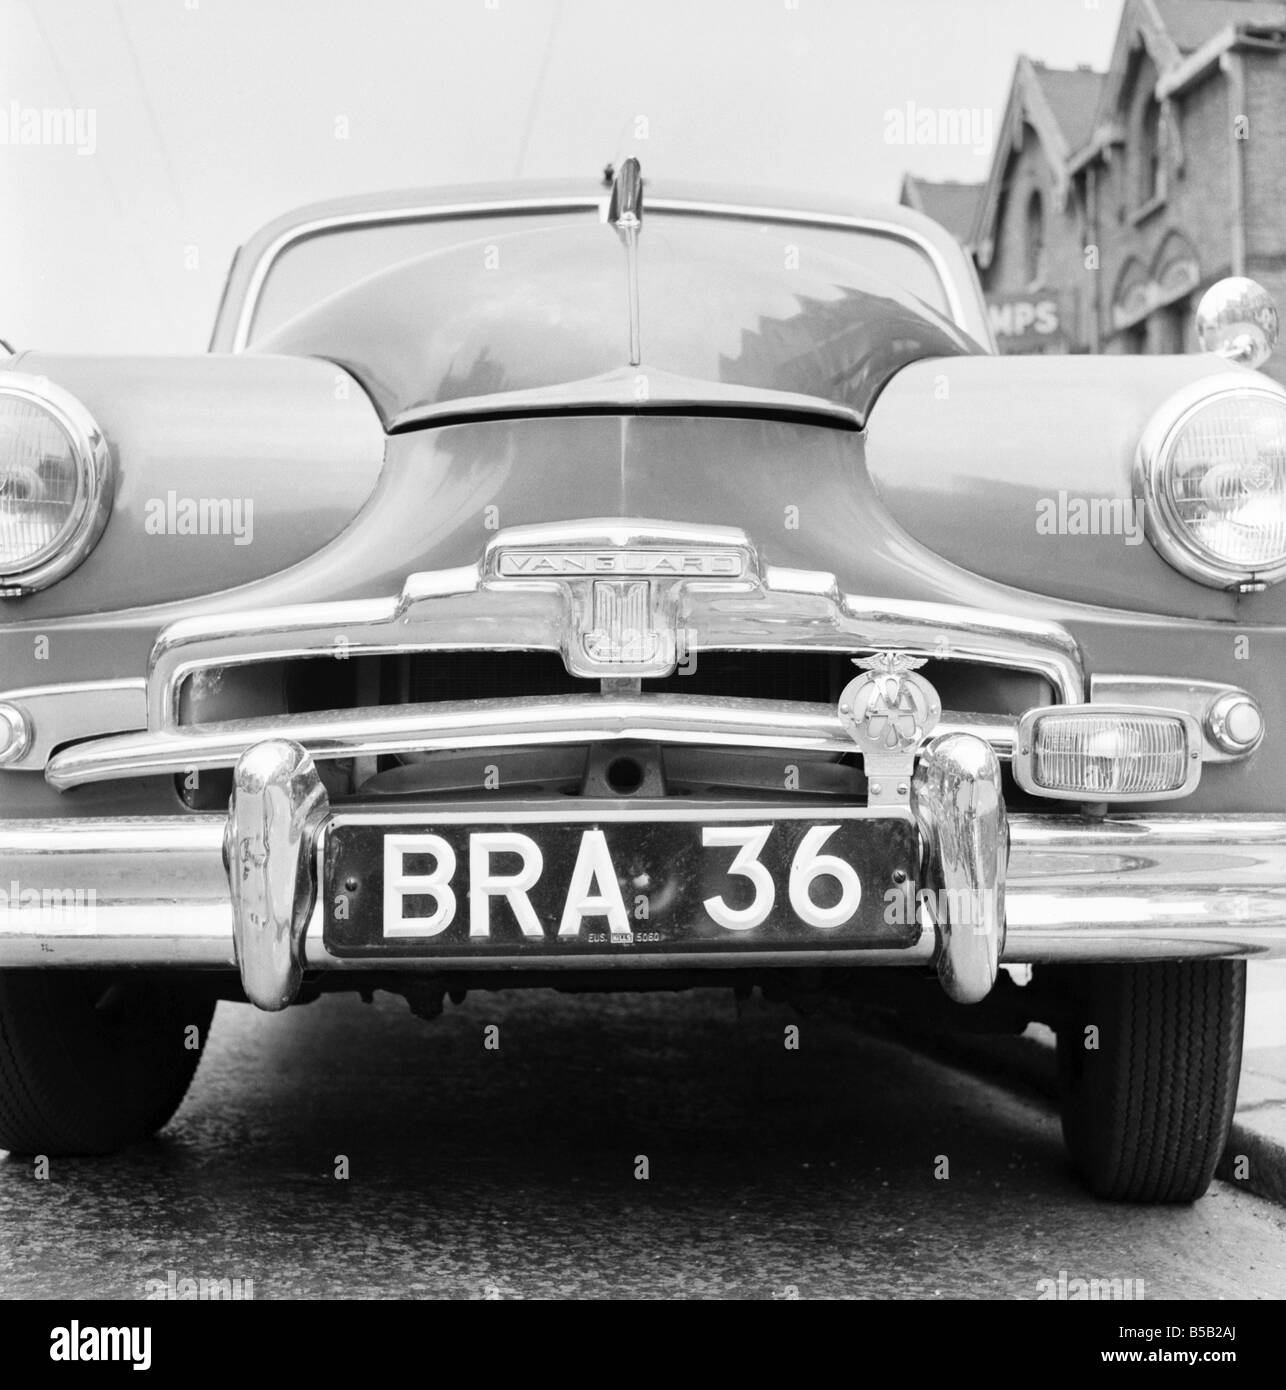 Standard Vanguard-Auto mit humorvollen Registrierungsnummer Platte BH 36.  1955 Stockfotografie - Alamy